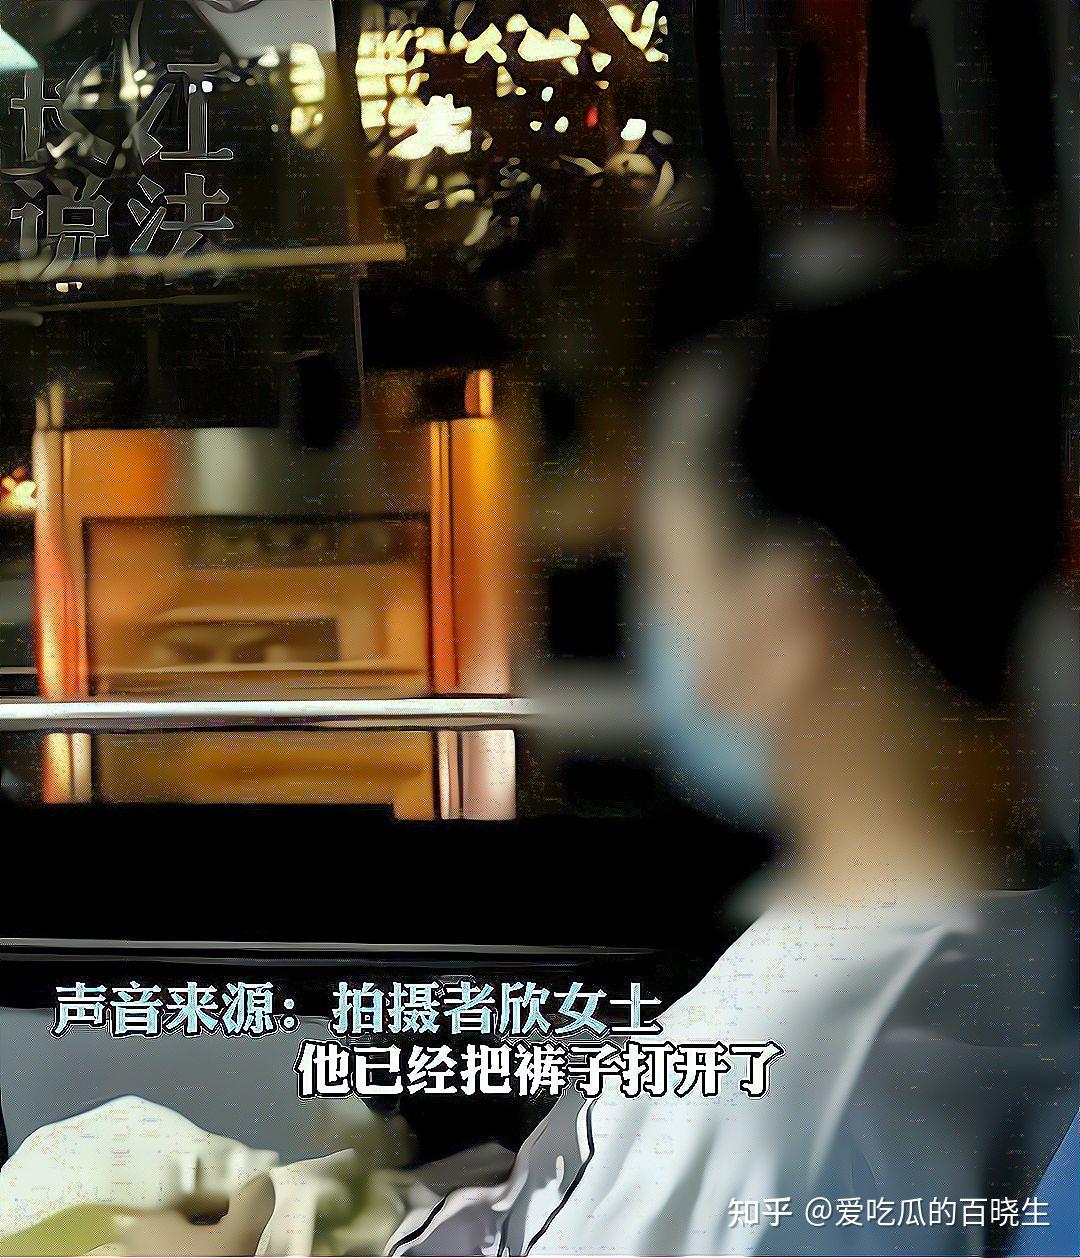 【偷拍】南京南火车站随手偷拍的美腿 - 得意生活-武汉生活消费社区 - Powered by Discuz!